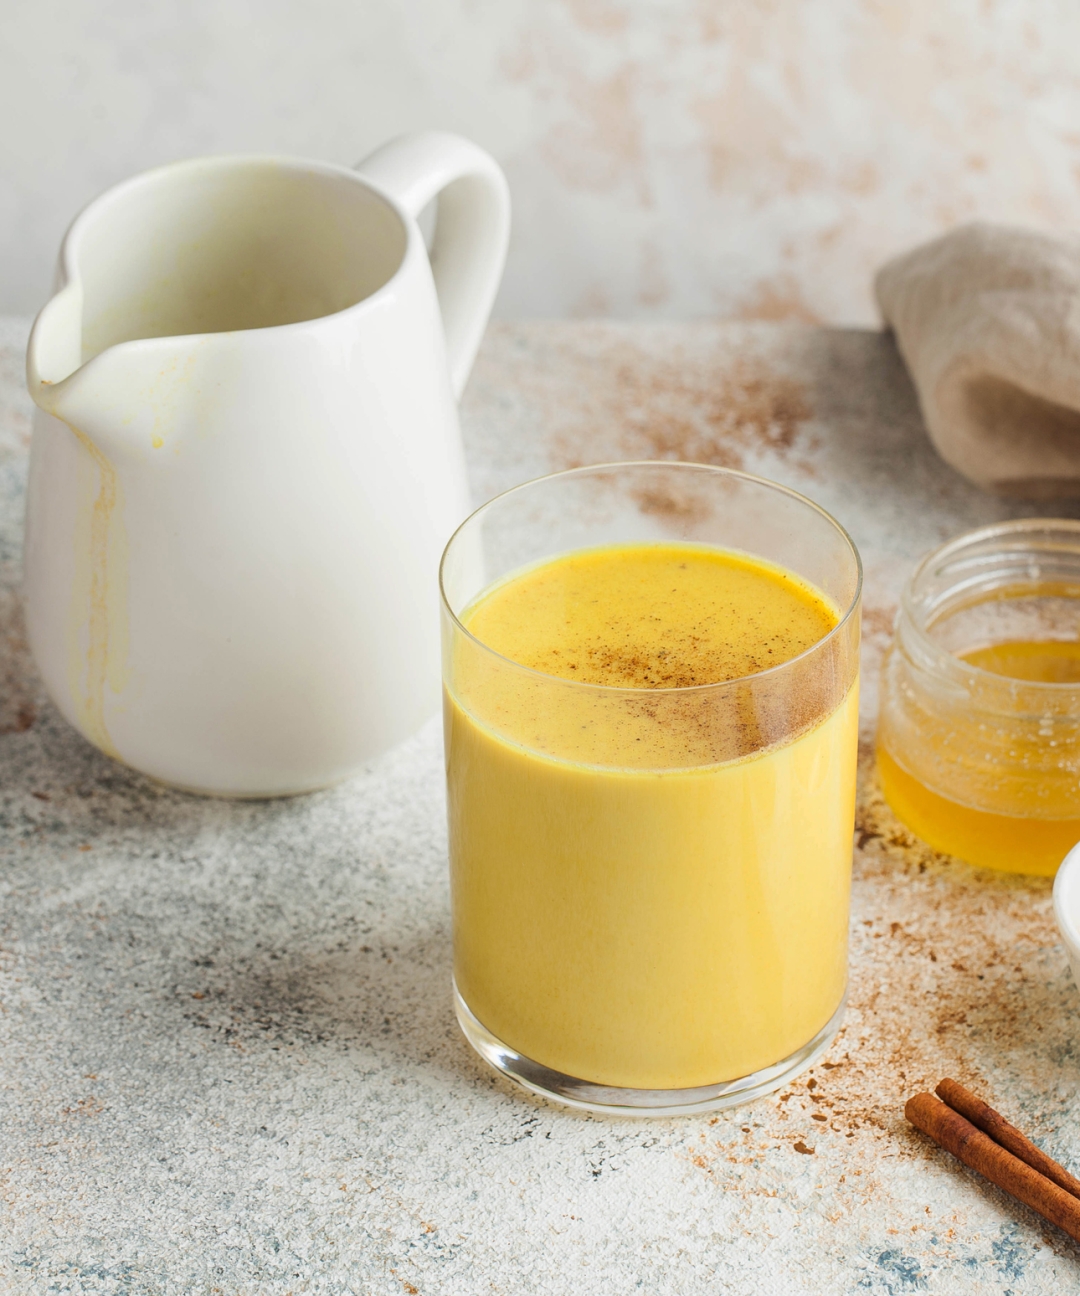 Sve što nam treba ovih dana: Zlatni smoothie u dva recepta za detoksikaciju i blistavu kožu